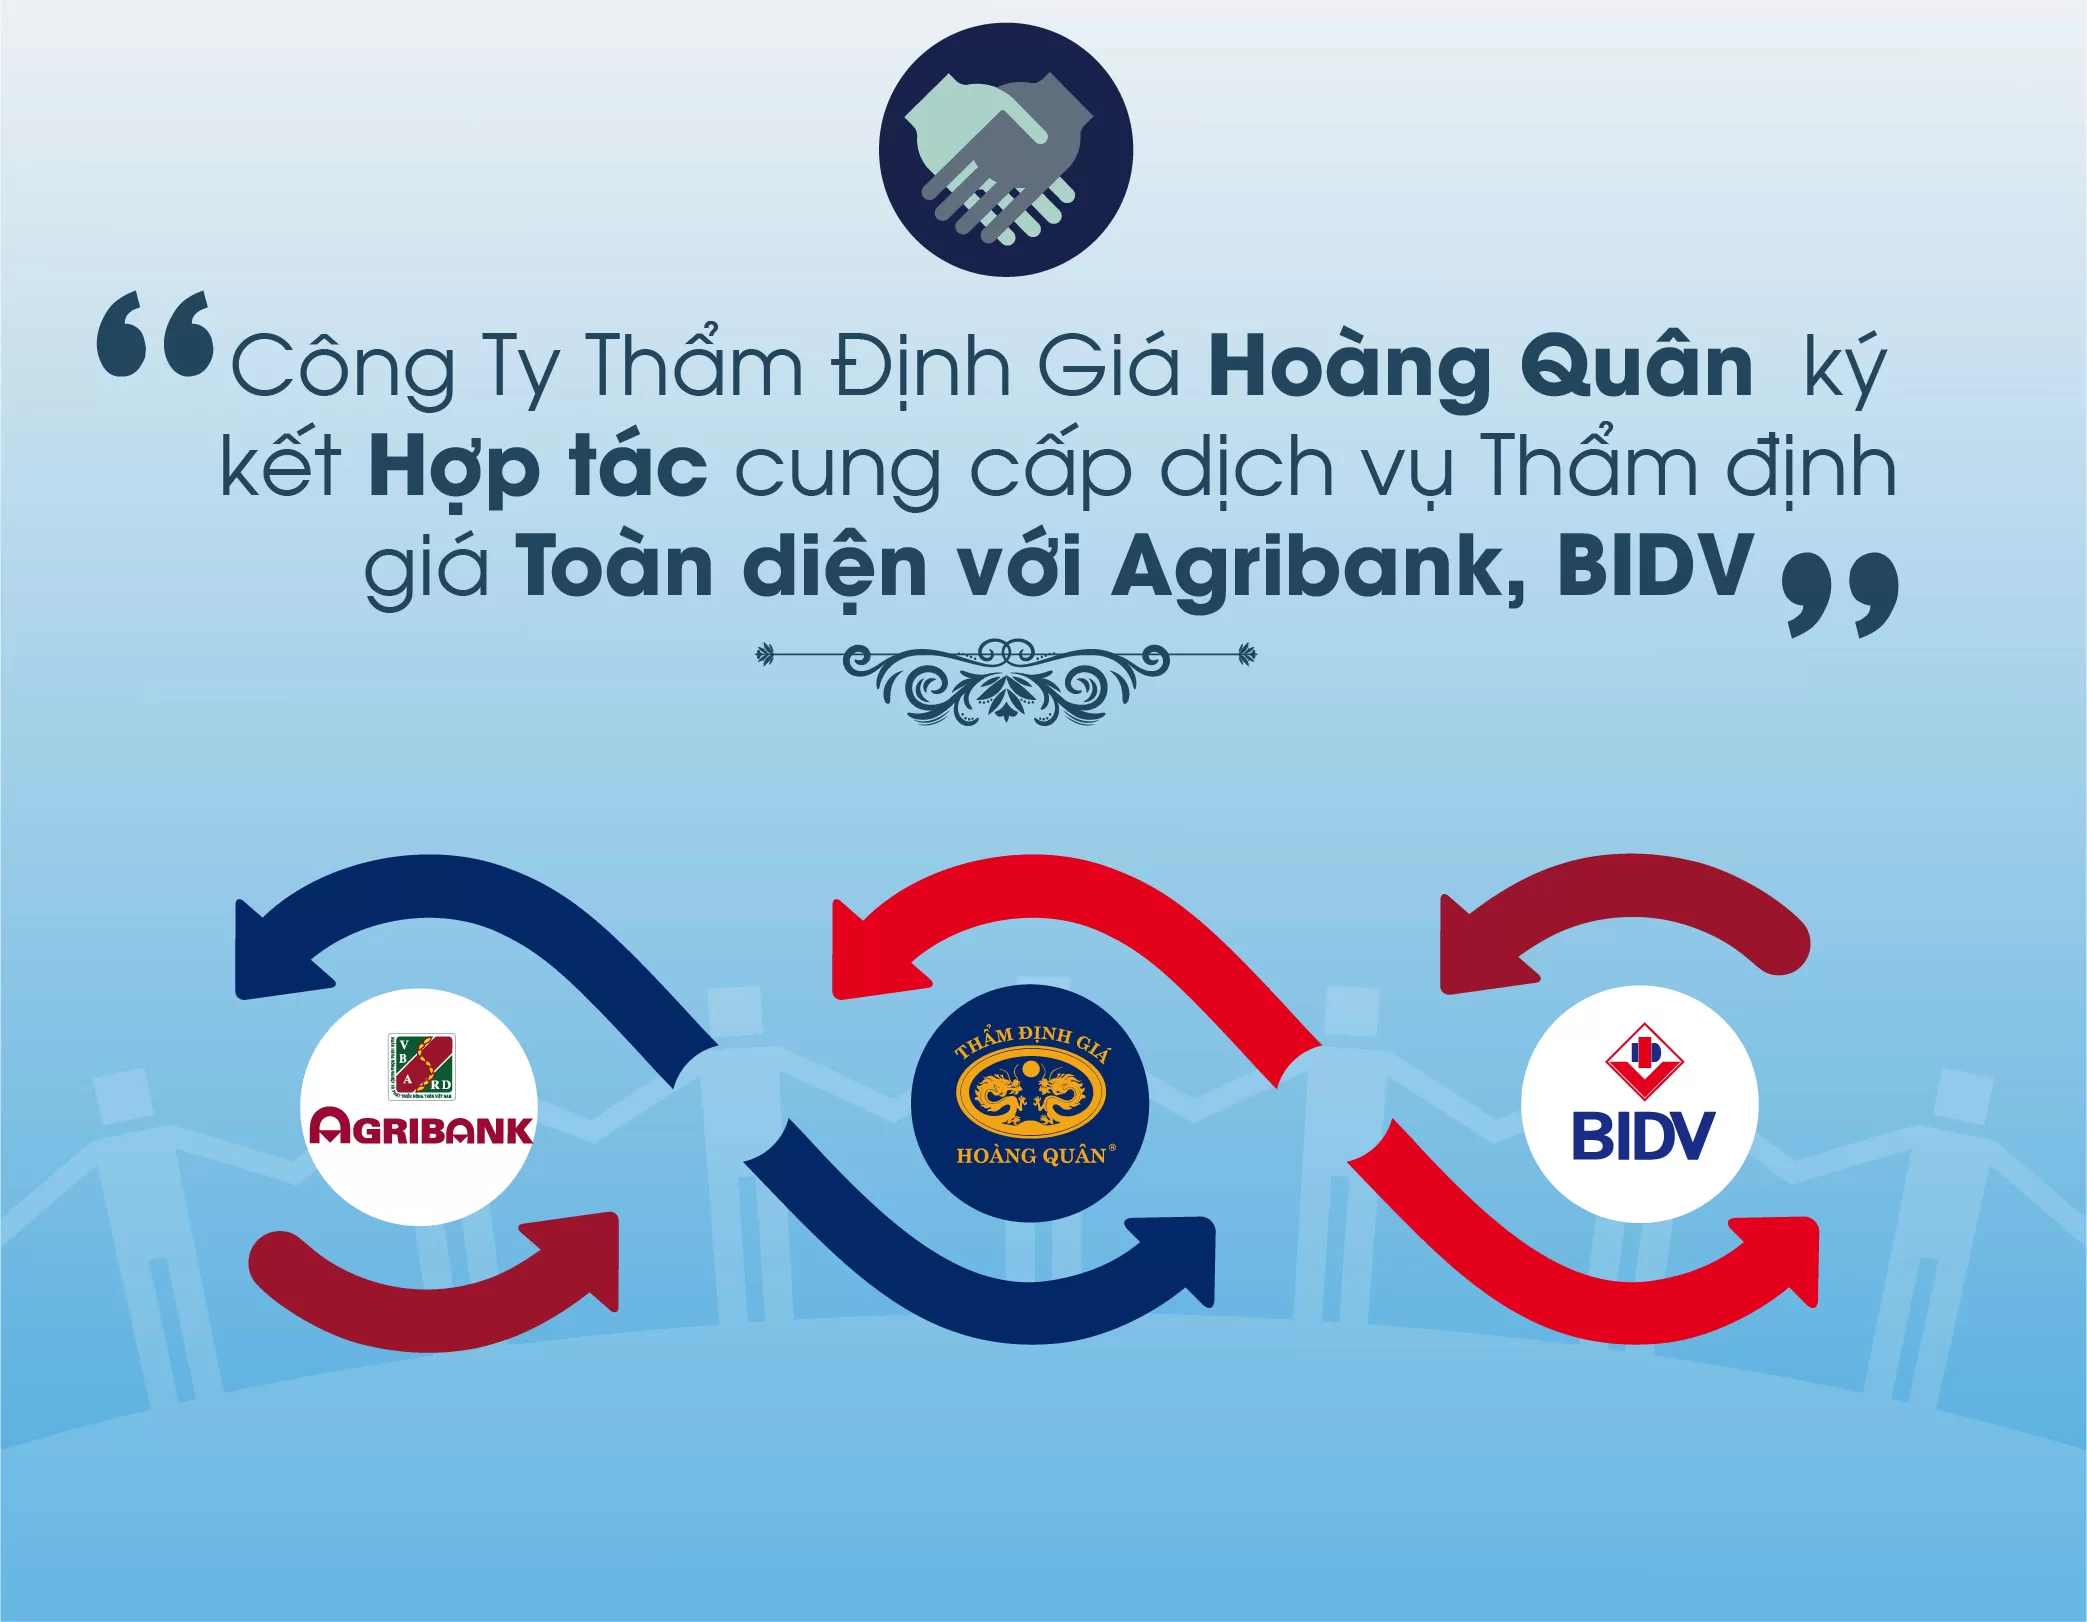 Thẩm Định Giá Hoàng Quân  ký kết hợp tác cung cấp dịch vụ Thẩm định giá toàn diện với Agribank, BIDV trong nhiều năm nay